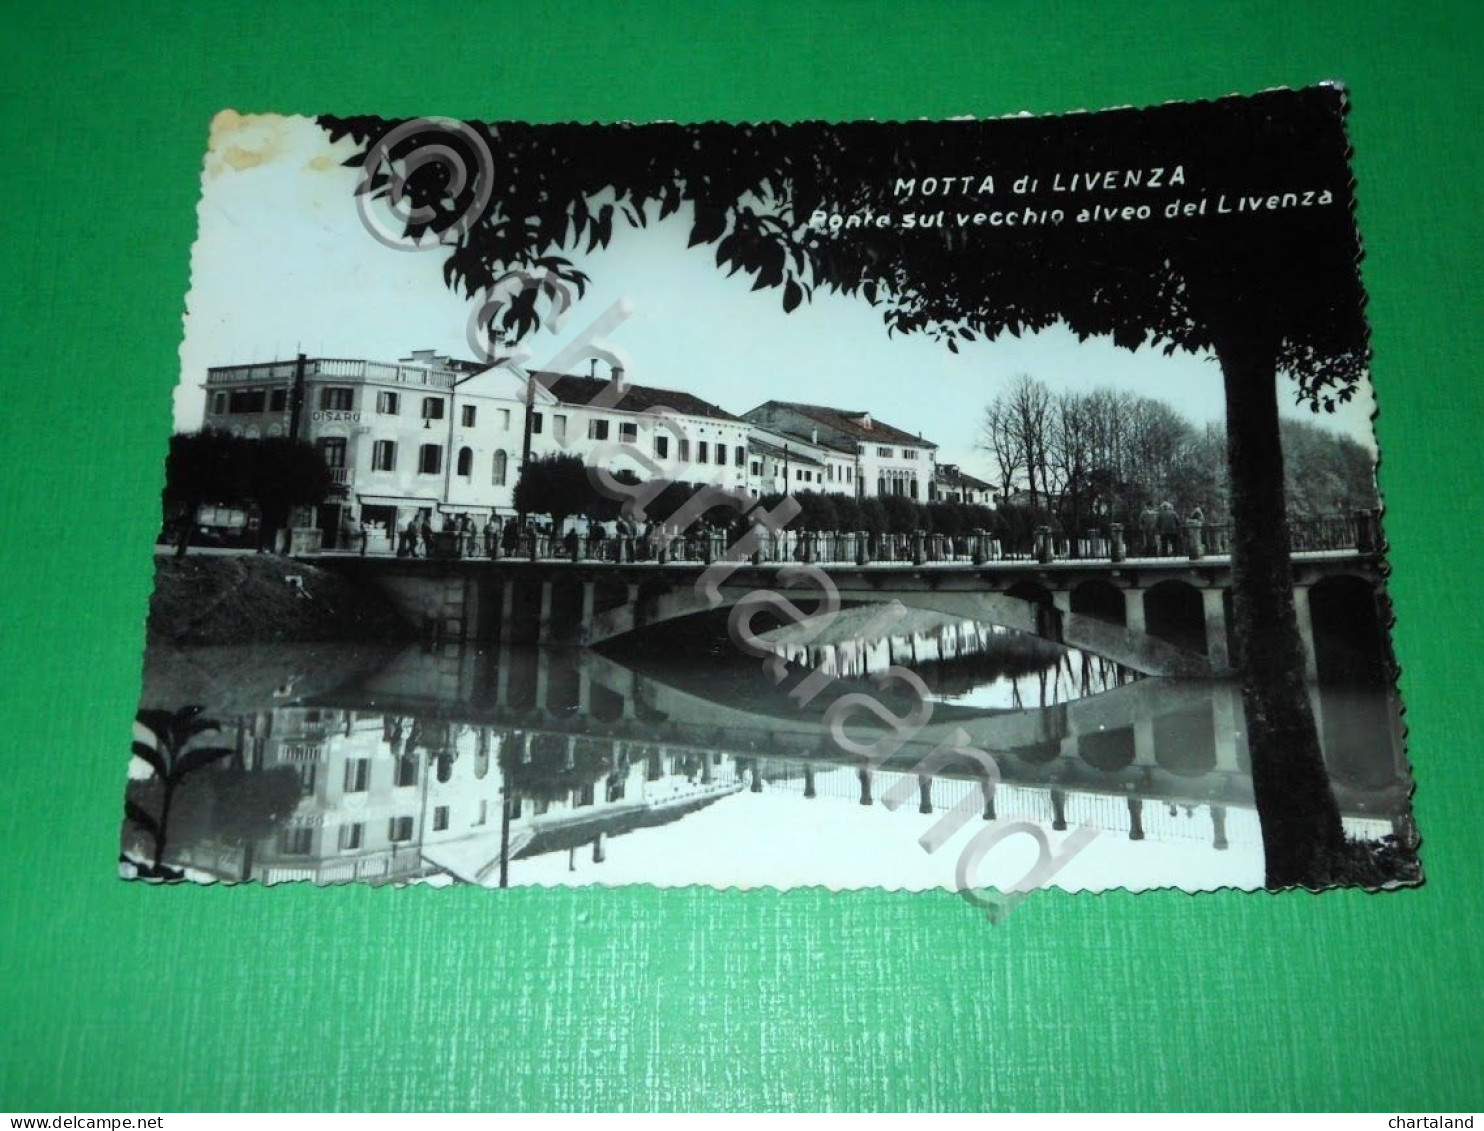 Cartolina Motta Di Livenza - Ponte Sul Vecchio Alveo Del Livenza 1956 - Treviso